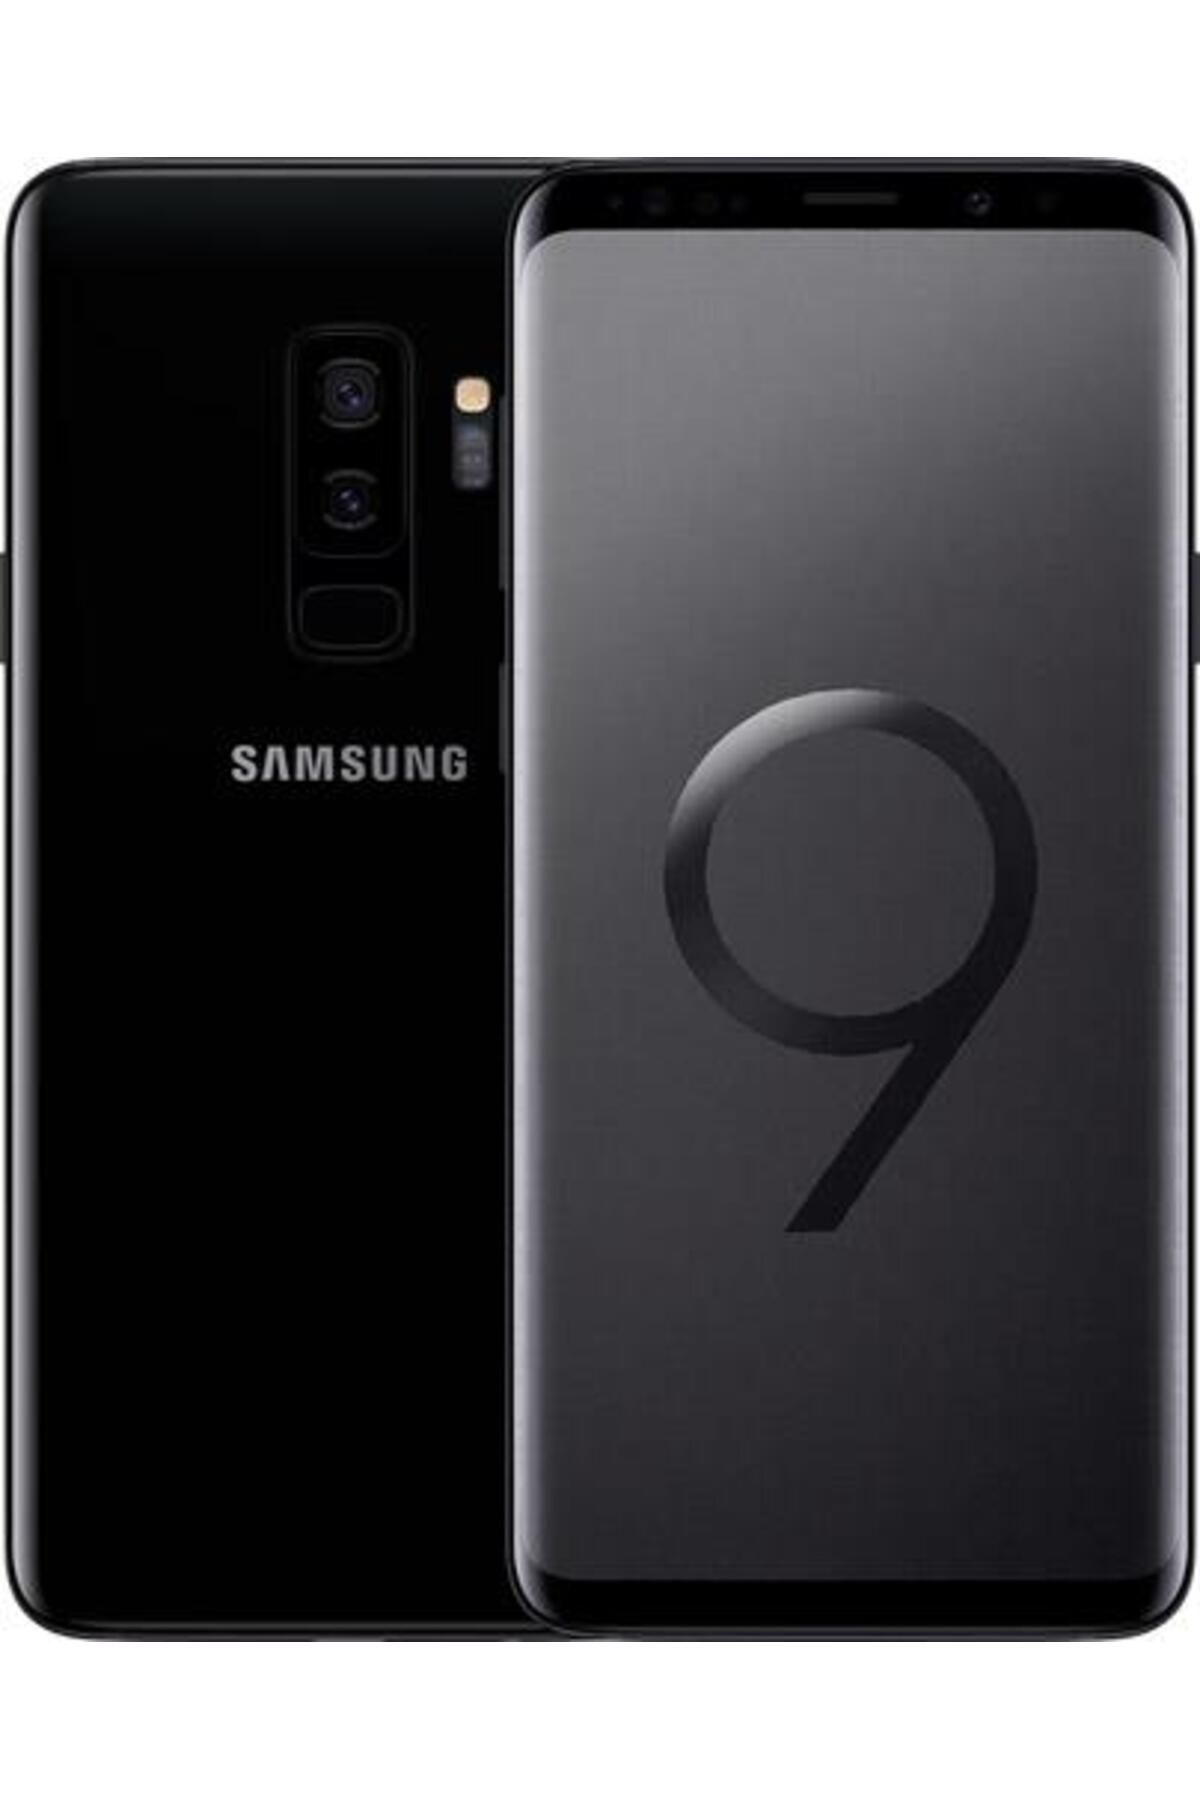 Samsung Galaxy S9 PLUS Siyah 64 GB/ 6 GB Ram (SM-G965F) YENİLENMİŞ ÜRÜN (B Kalite)